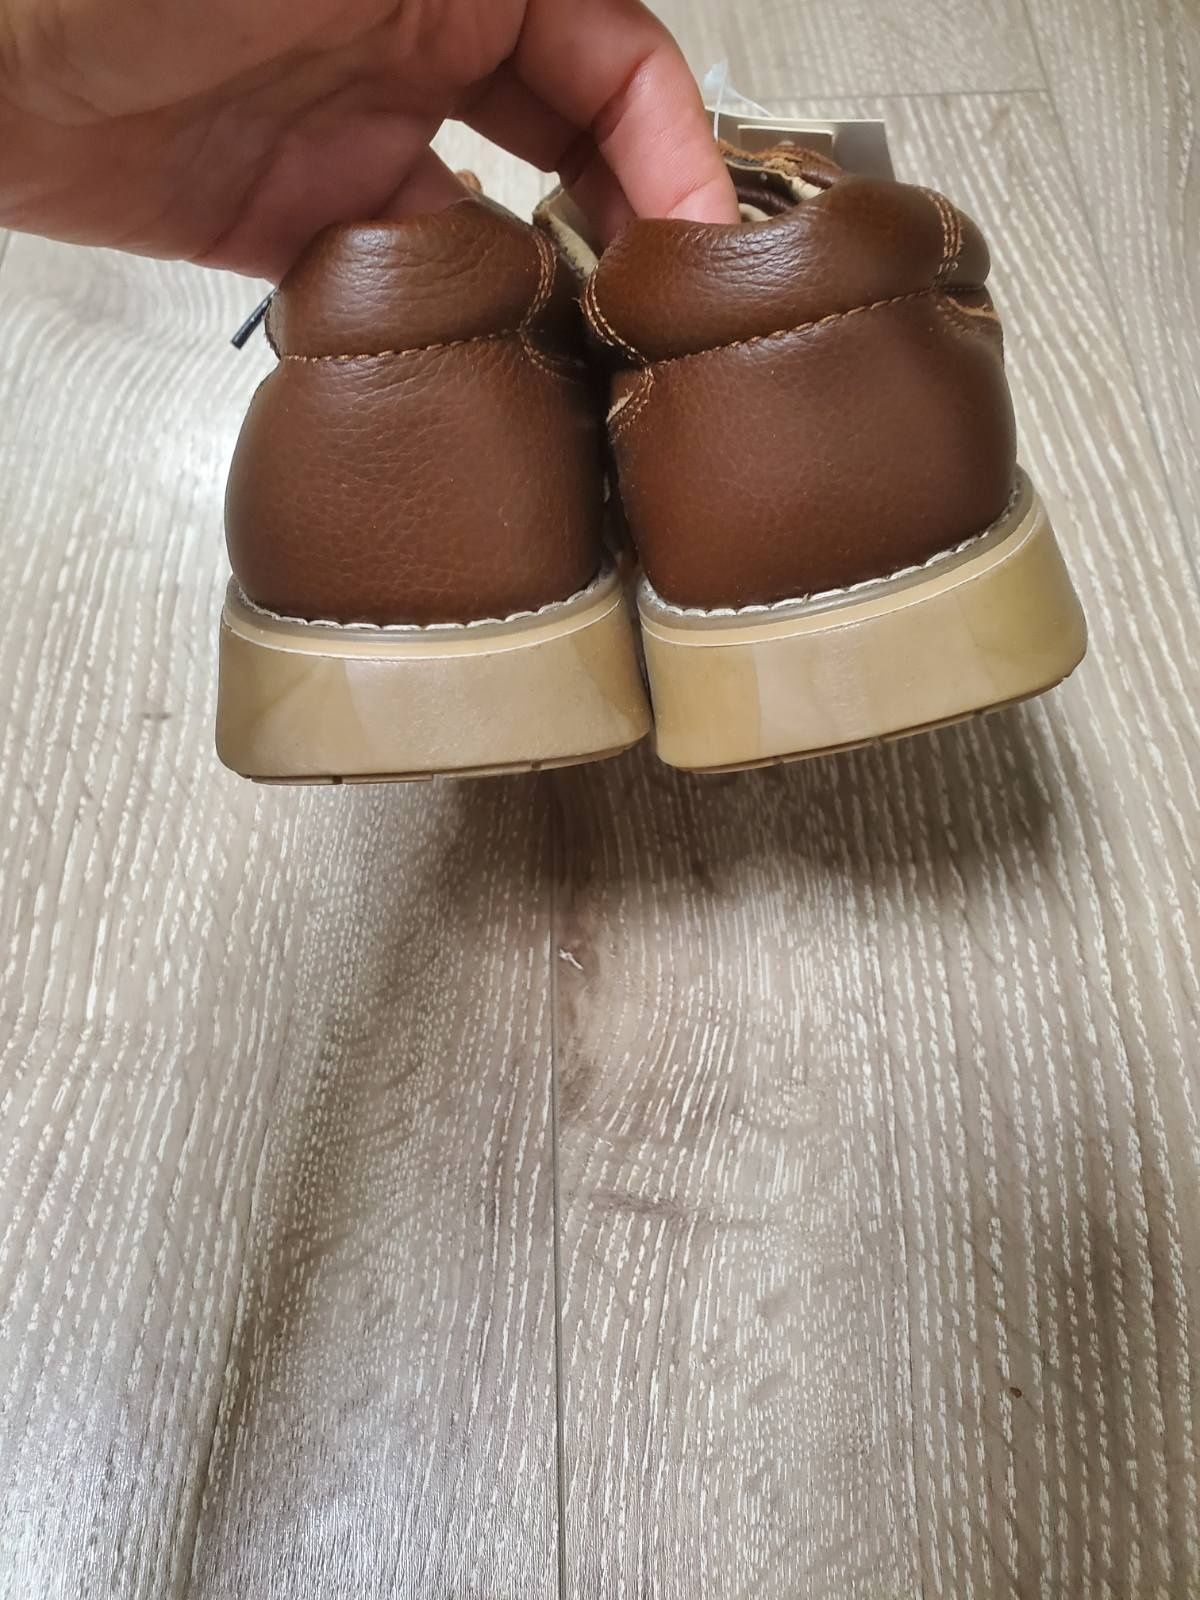 Детские ботинки, туфли